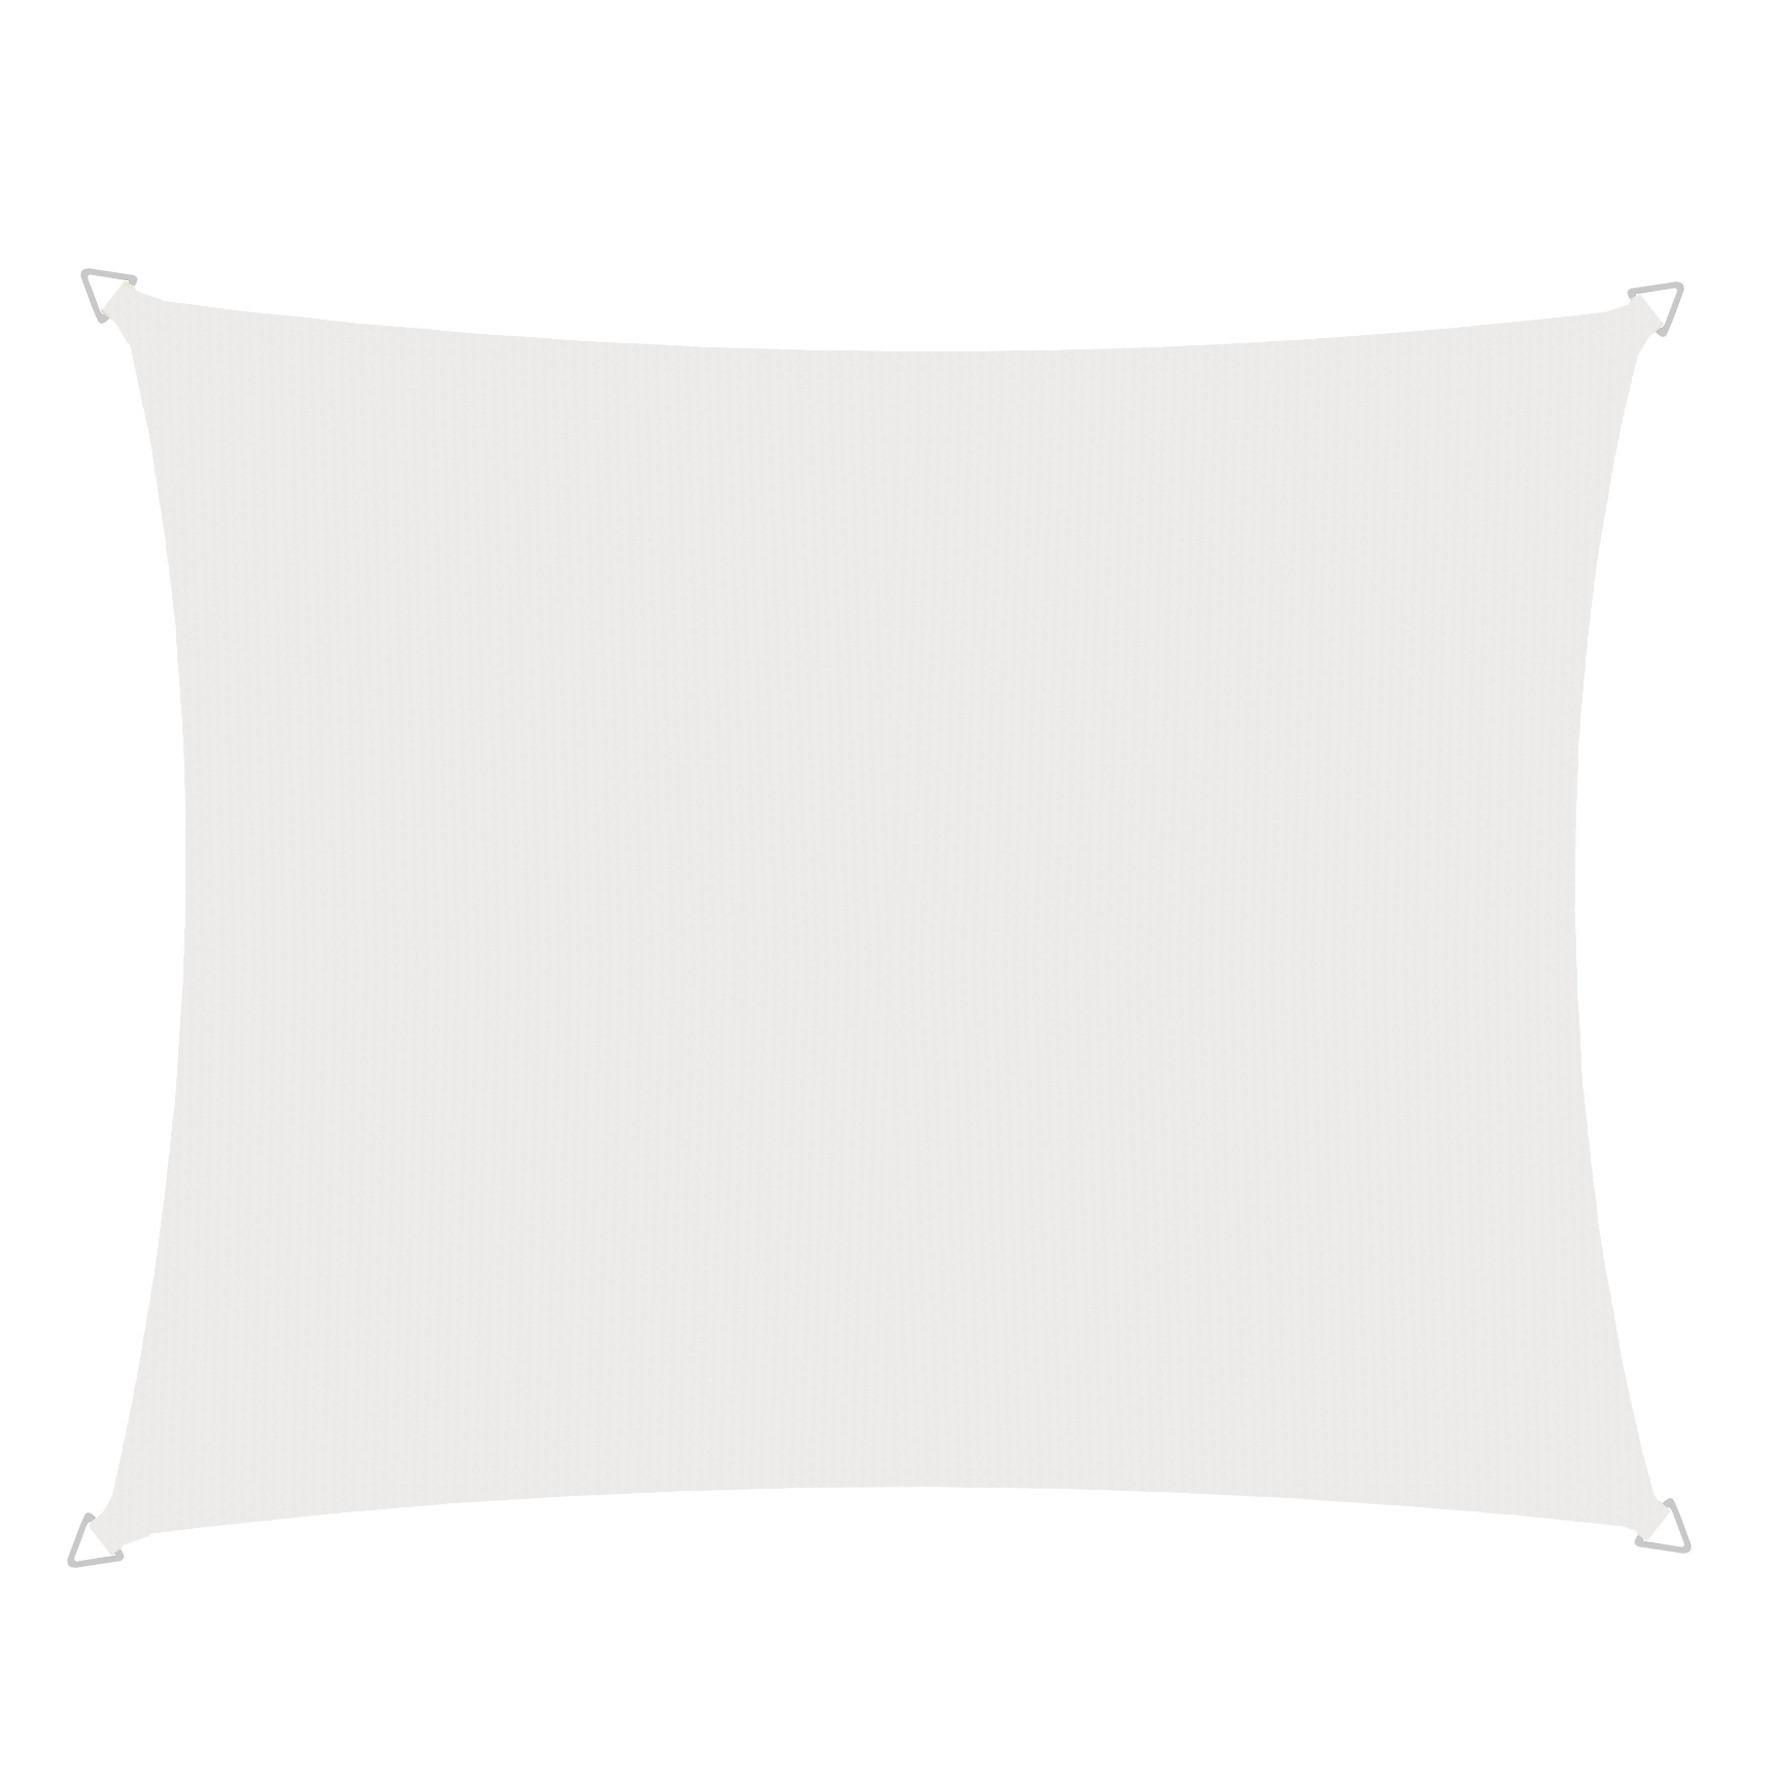 Sonnensegel Rechteck 3x4 m Cannes Re - Weiß, Basics, Kunststoff (300/400cm) - Windhager